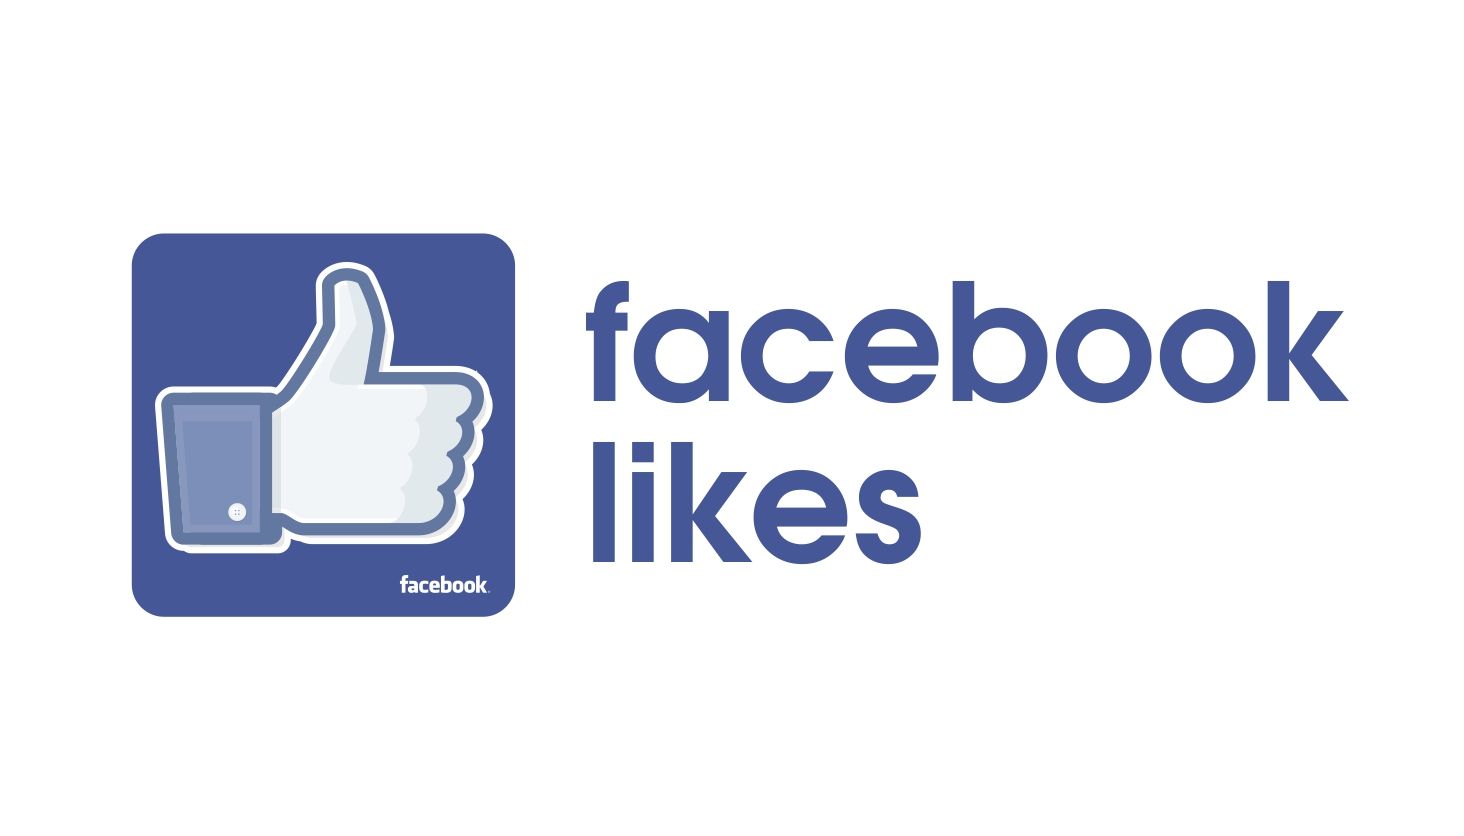 Facebook posting. Фейсбук. Facebook like. Лайк из фейсбука. Лайк в Фейсбуке на прозрачном фоне.